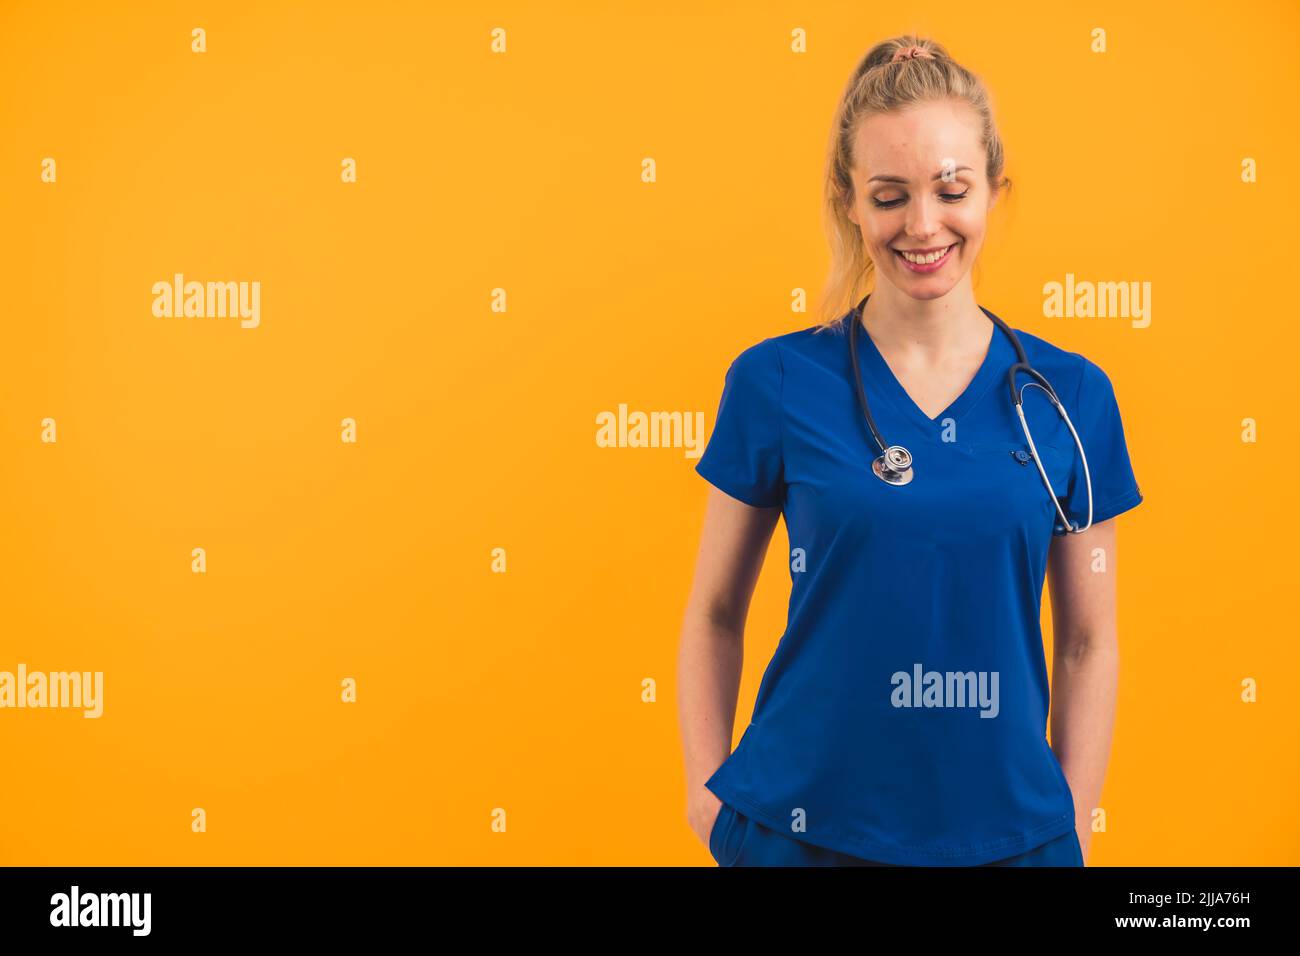 Bella bionda sottile donna caucasica in copia spazio su sfondo arancione indossando blu scuro uniforme ospedale e stetoscopio. Espressione facciale sorridente, guardando verso il basso. Foto di alta qualità Foto Stock